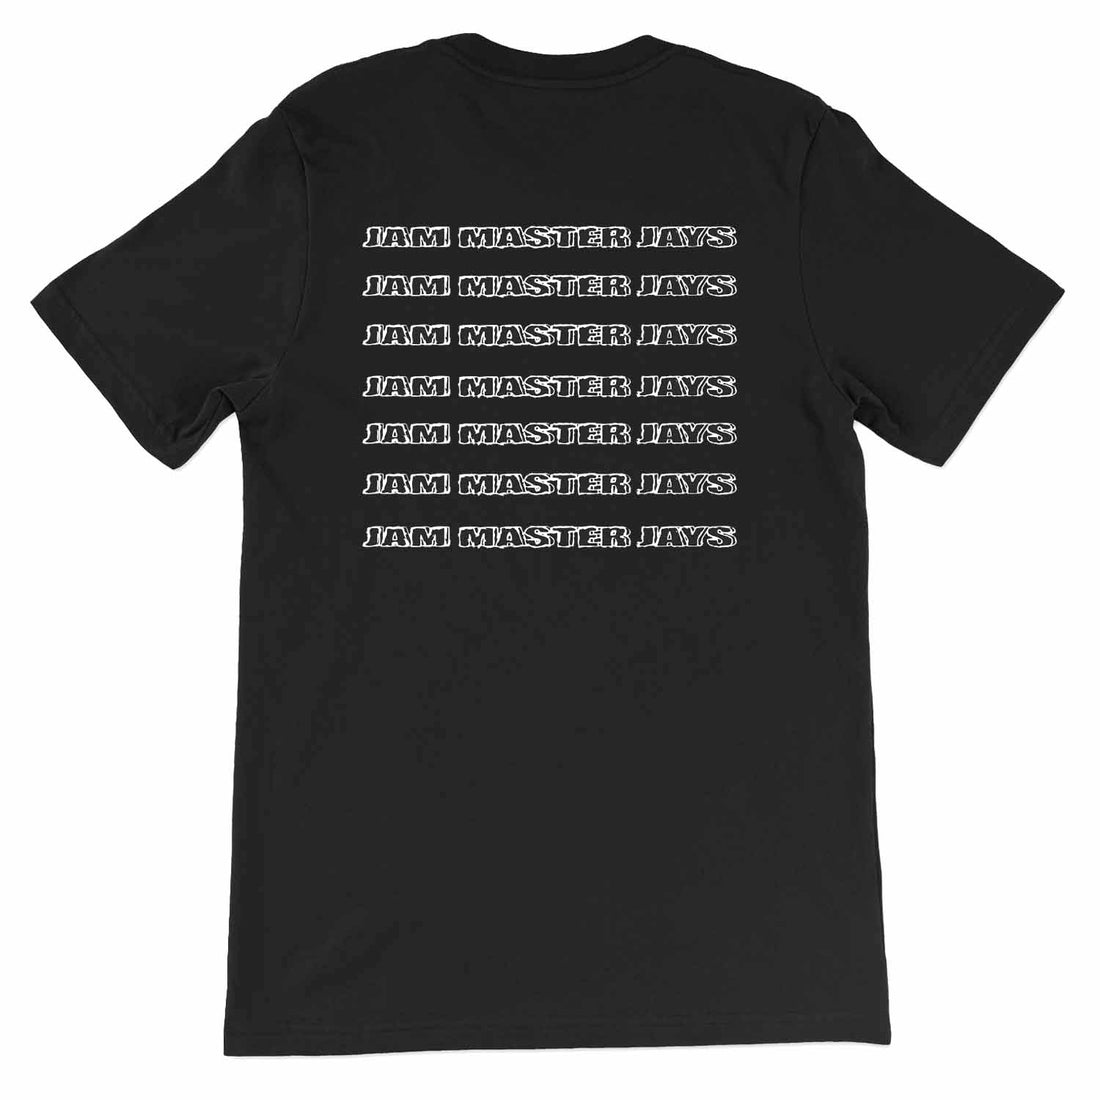 Jam Master Jays Sketch T-Shirt Back